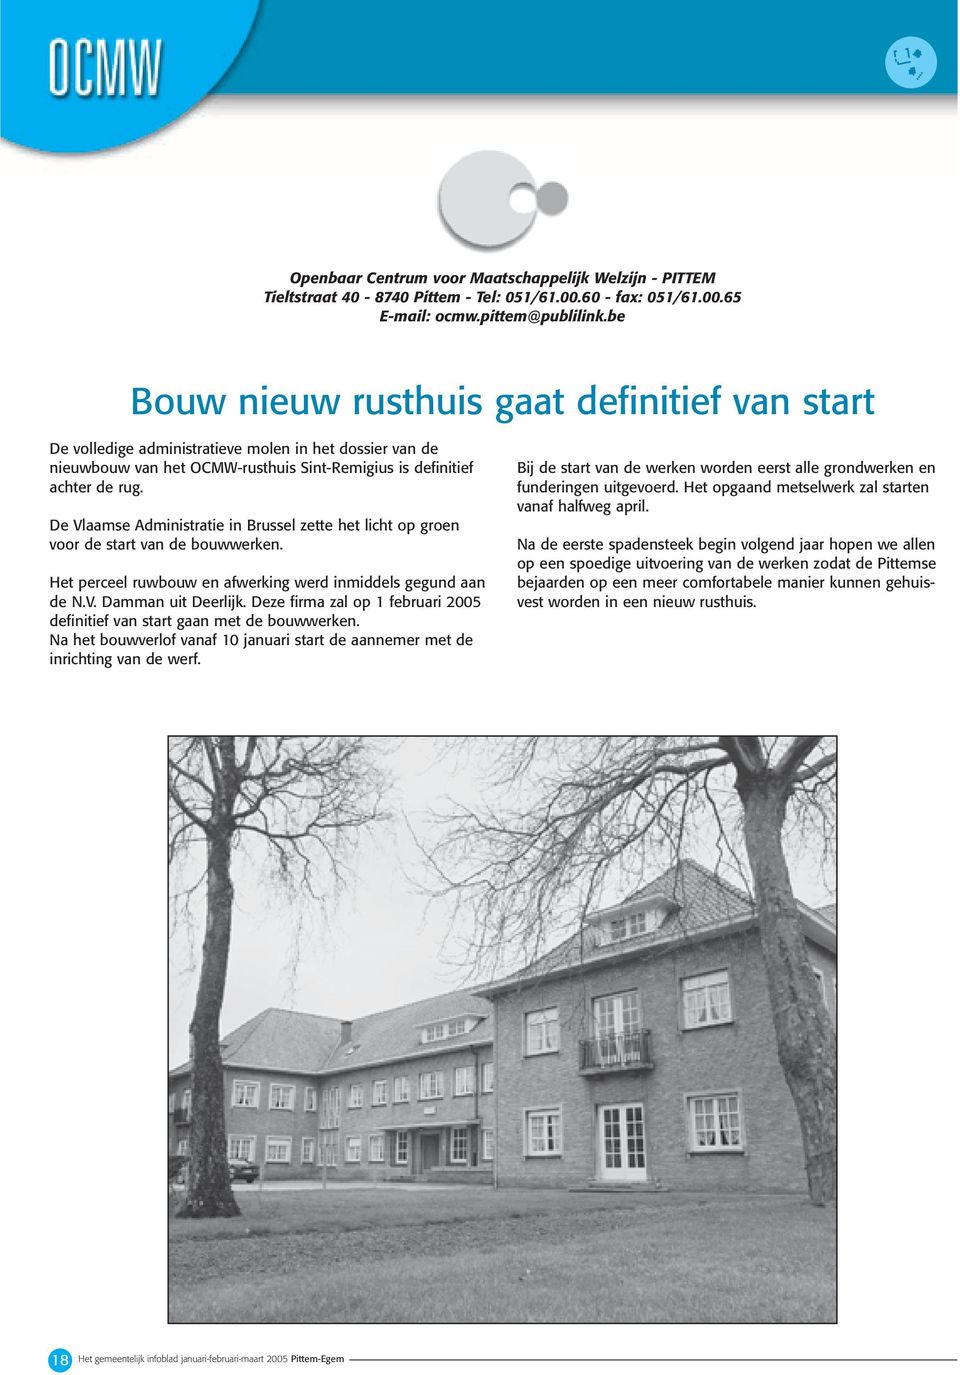 De Vlaamse Administratie in Brussel zette het licht op groen voor de start van de bouwwerken. Het perceel ruwbouw en afwerking werd inmiddels gegund aan de N.V. Damman uit Deerlijk.